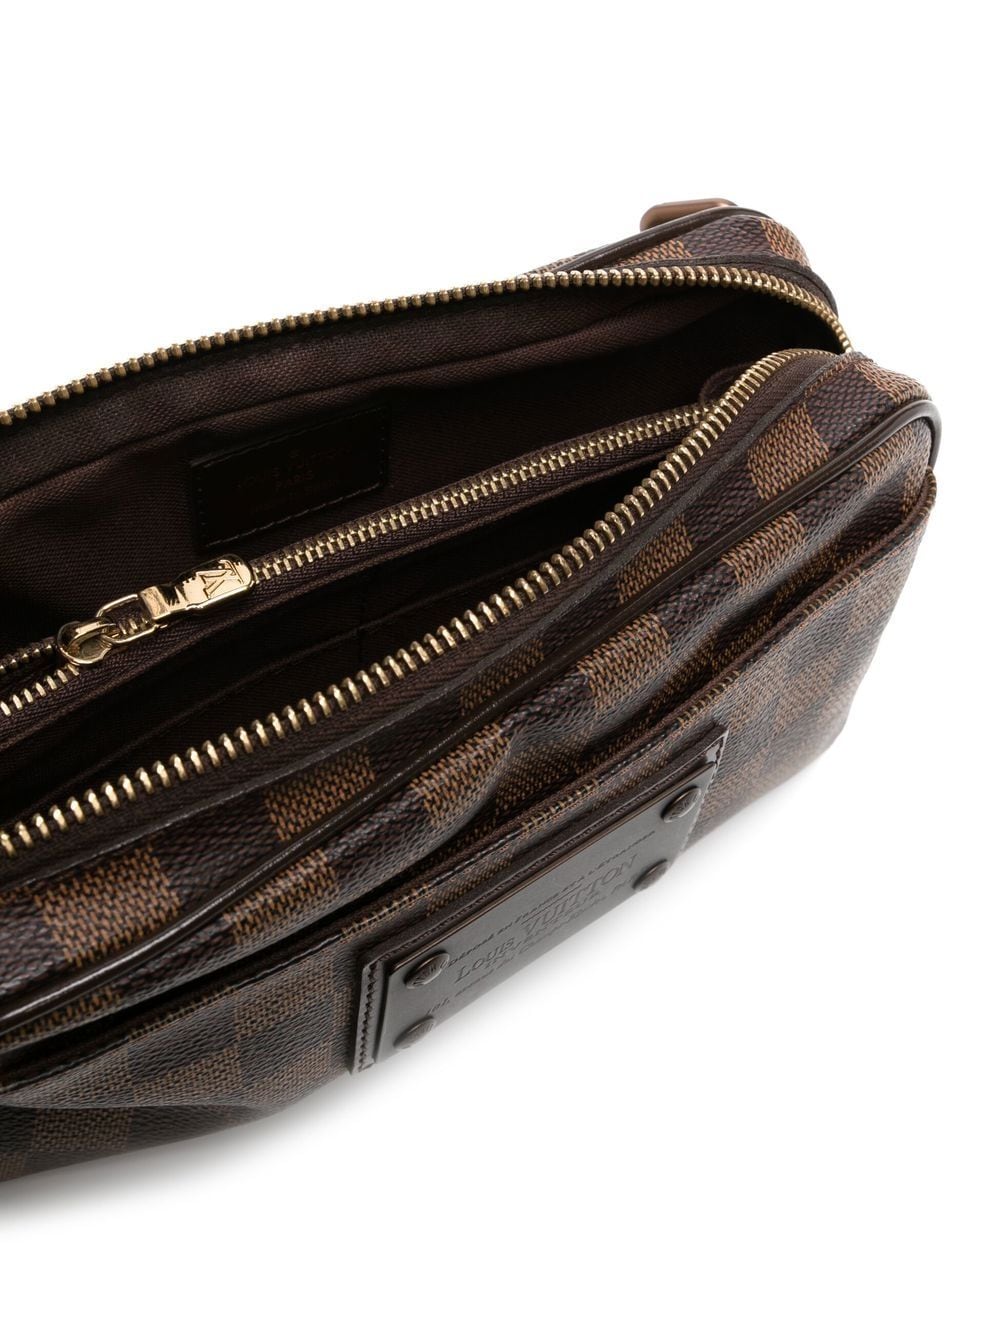 Louis Vuitton Damier Ebene Brooklyn Bum Bag - A World Of Goods For